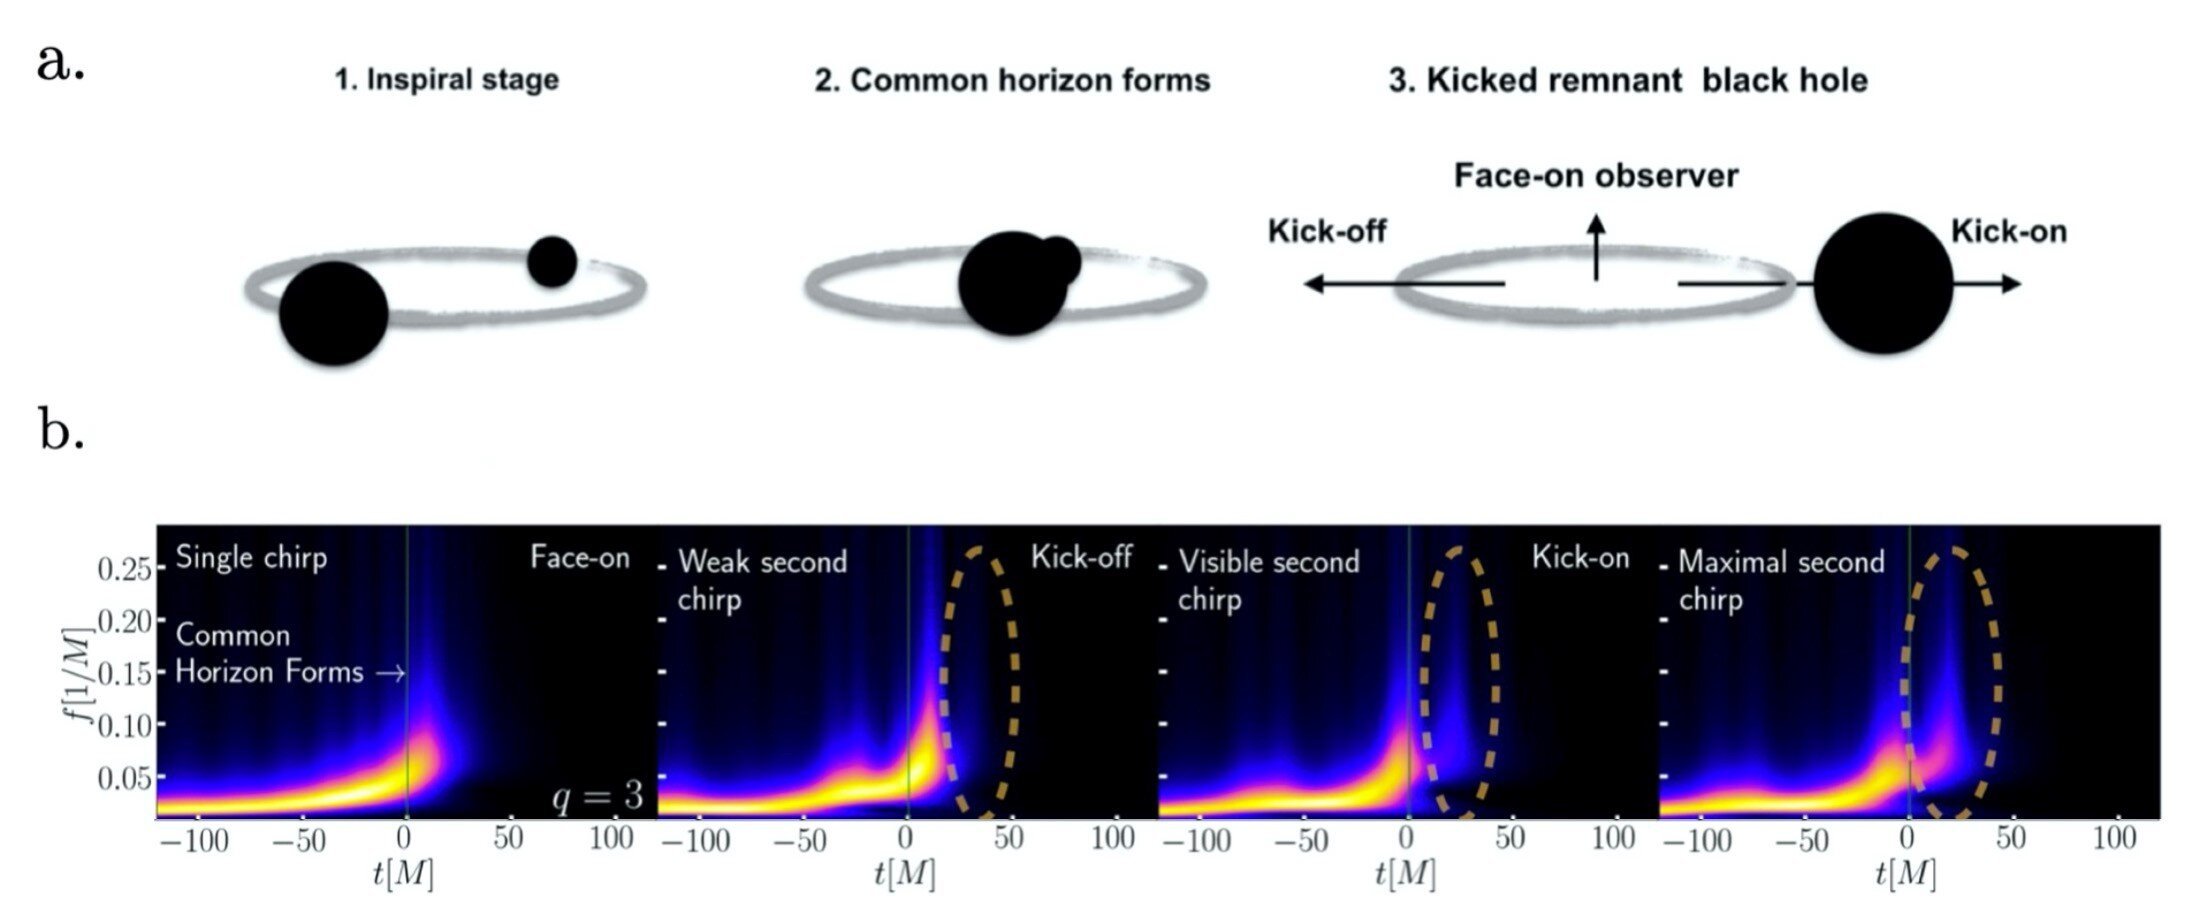 Buracos negros resultantes de colisões de outros geram mais que uma única onda gravitacional.